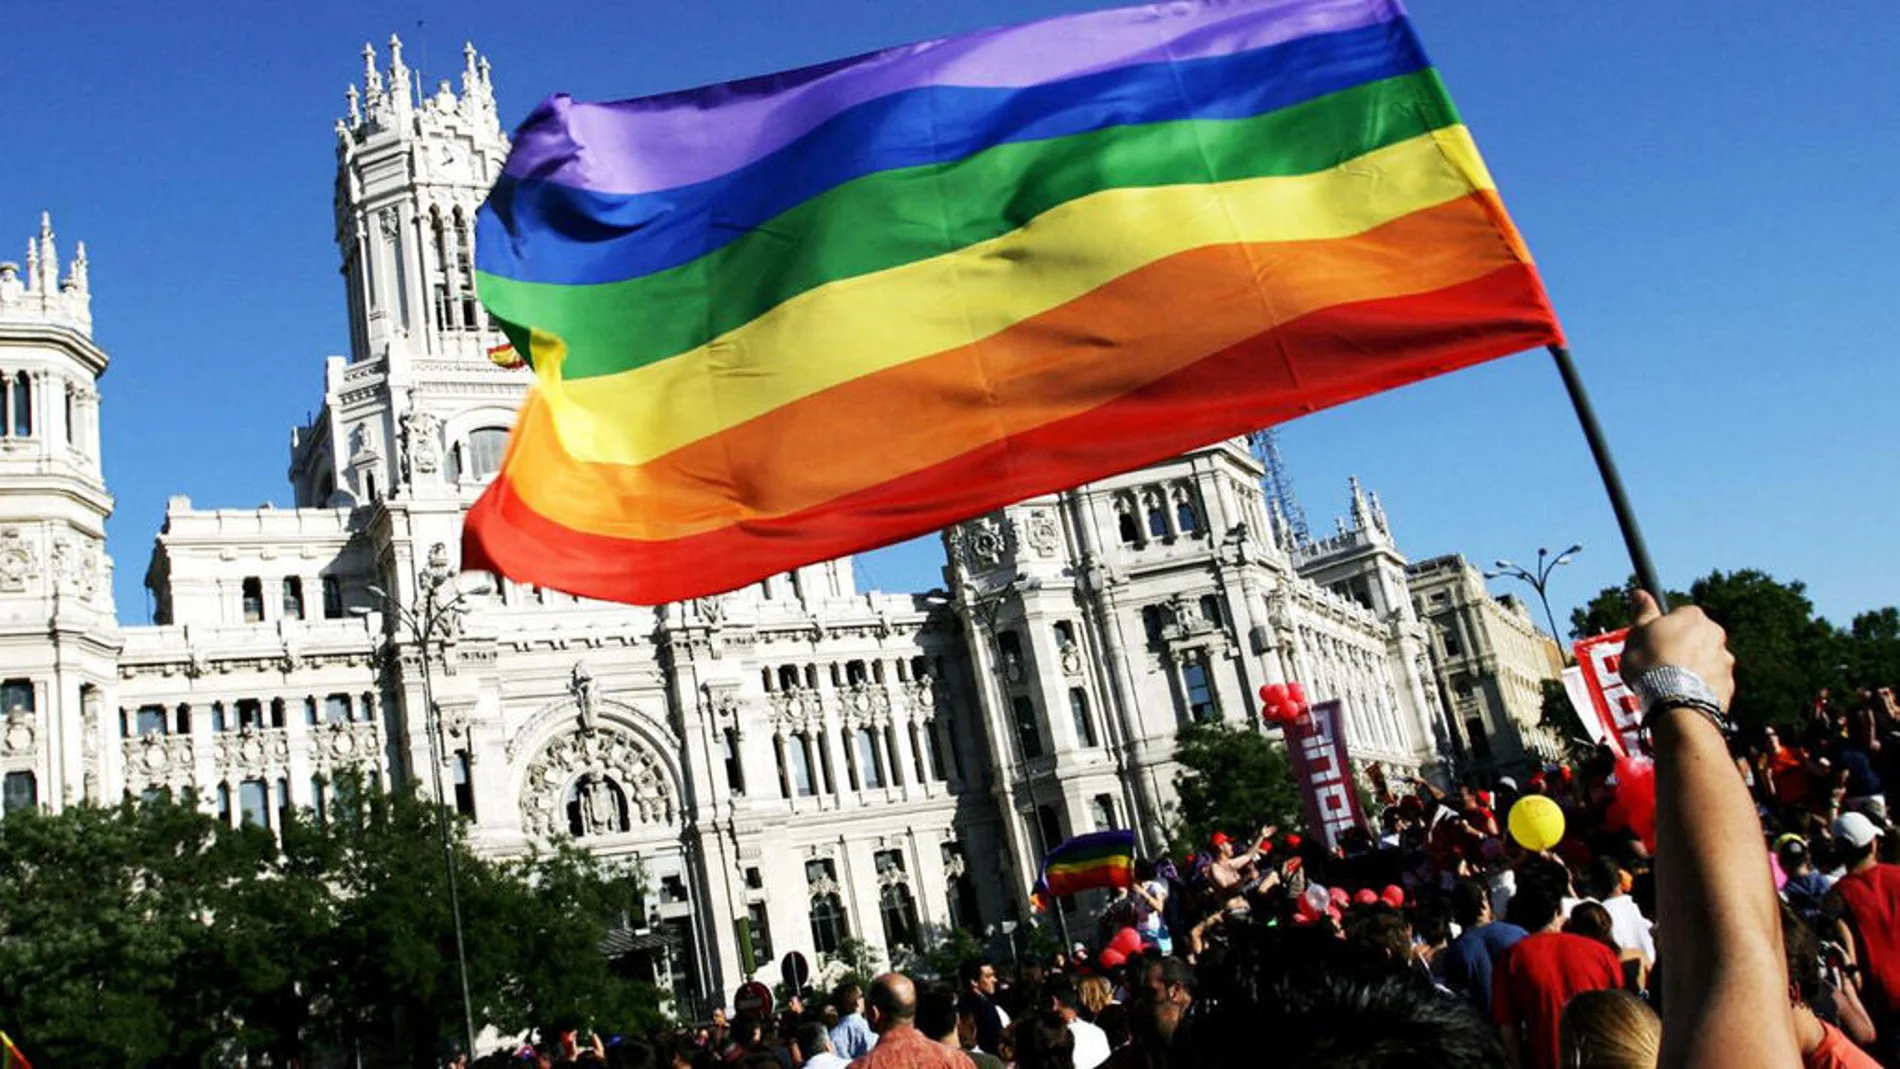 Orgullo 2021: El ranking de famosos LGBTIQ que más interés despiertan en España